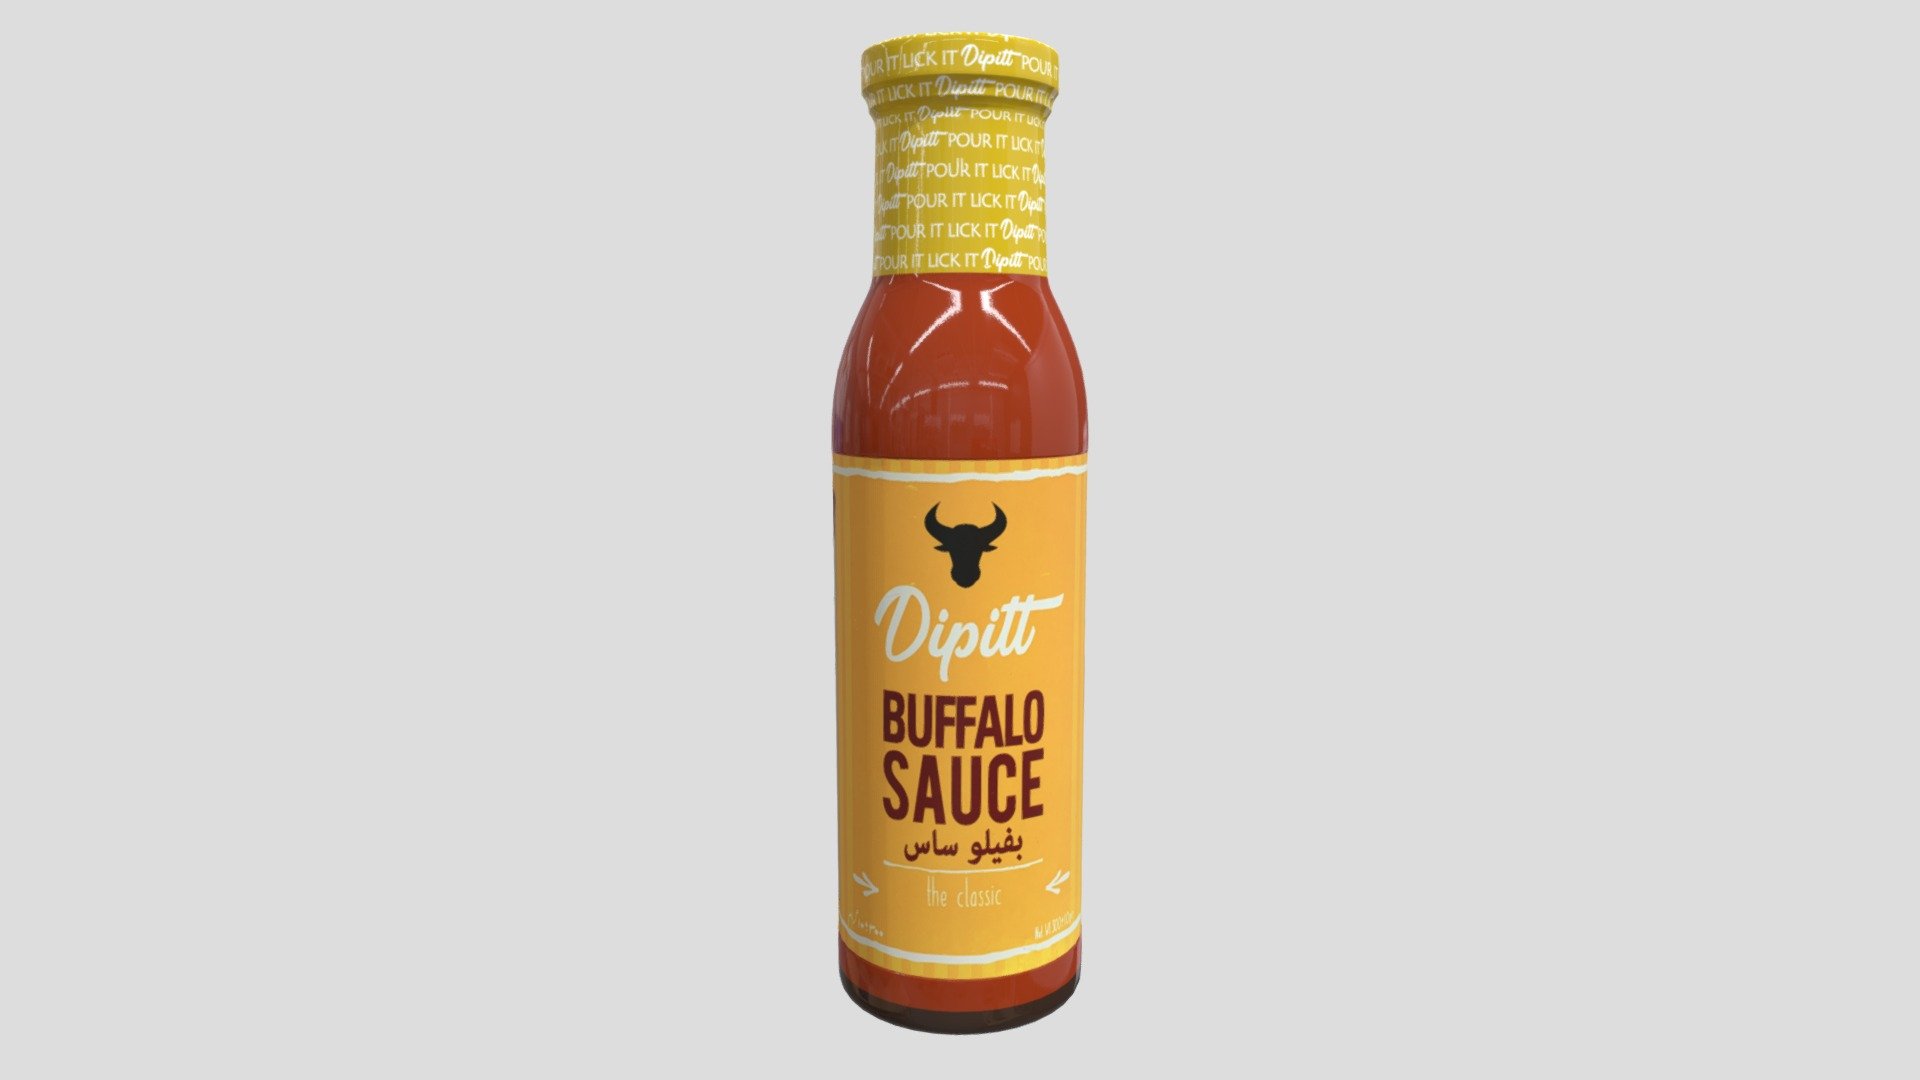 3d Model  buffalo sauce - buffalo sauce - 3D model by cybersynctech 3d model